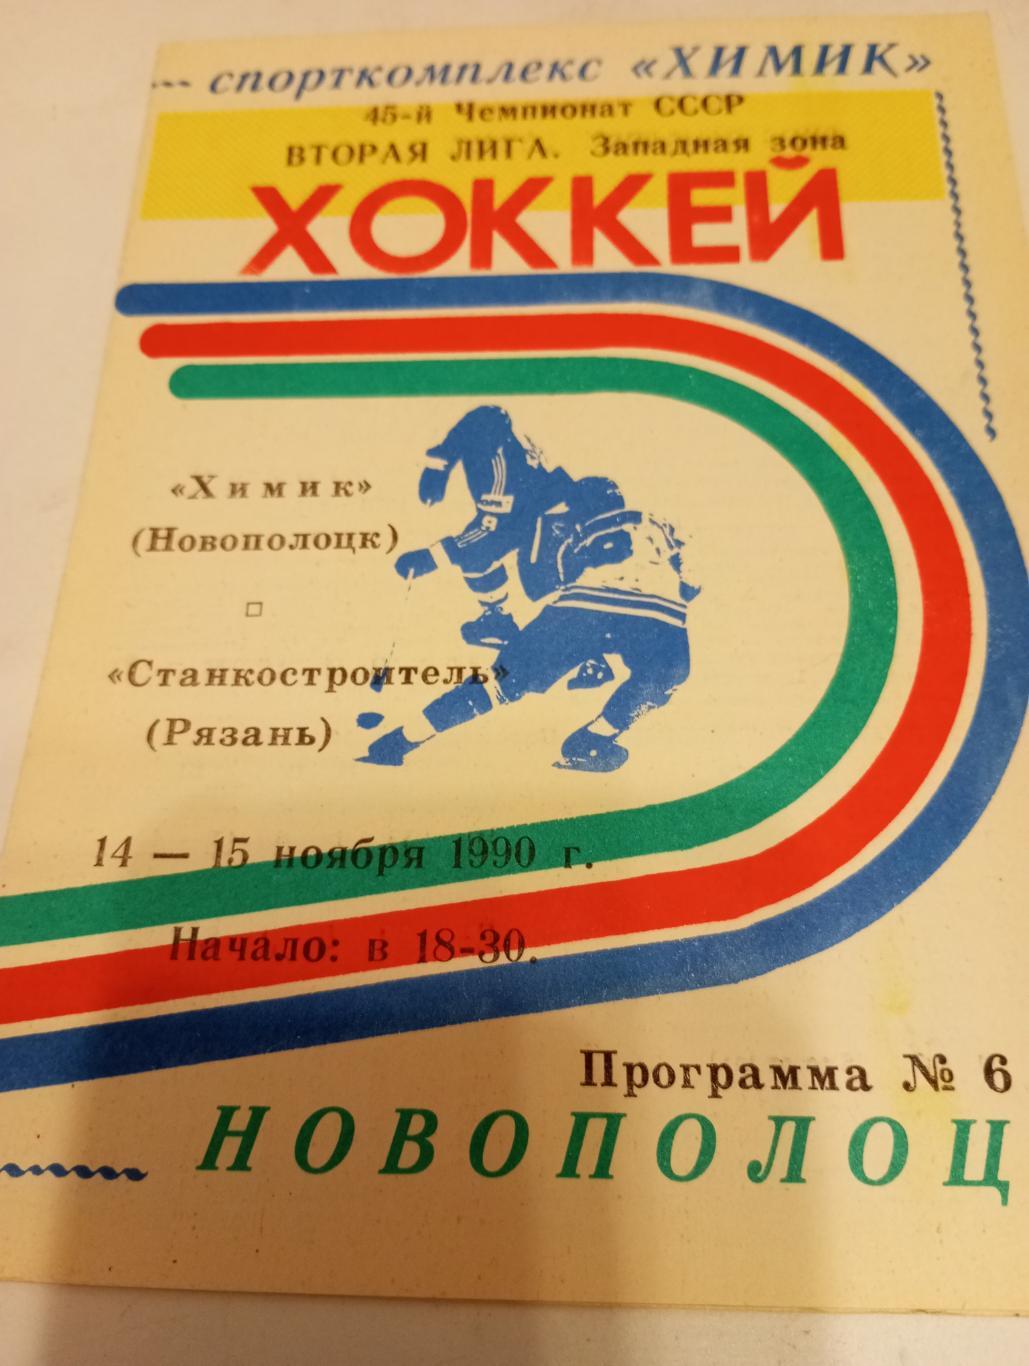 Химик(Новополоцк ) - Станкостроитель., (Рязань).14/15.11.1990.